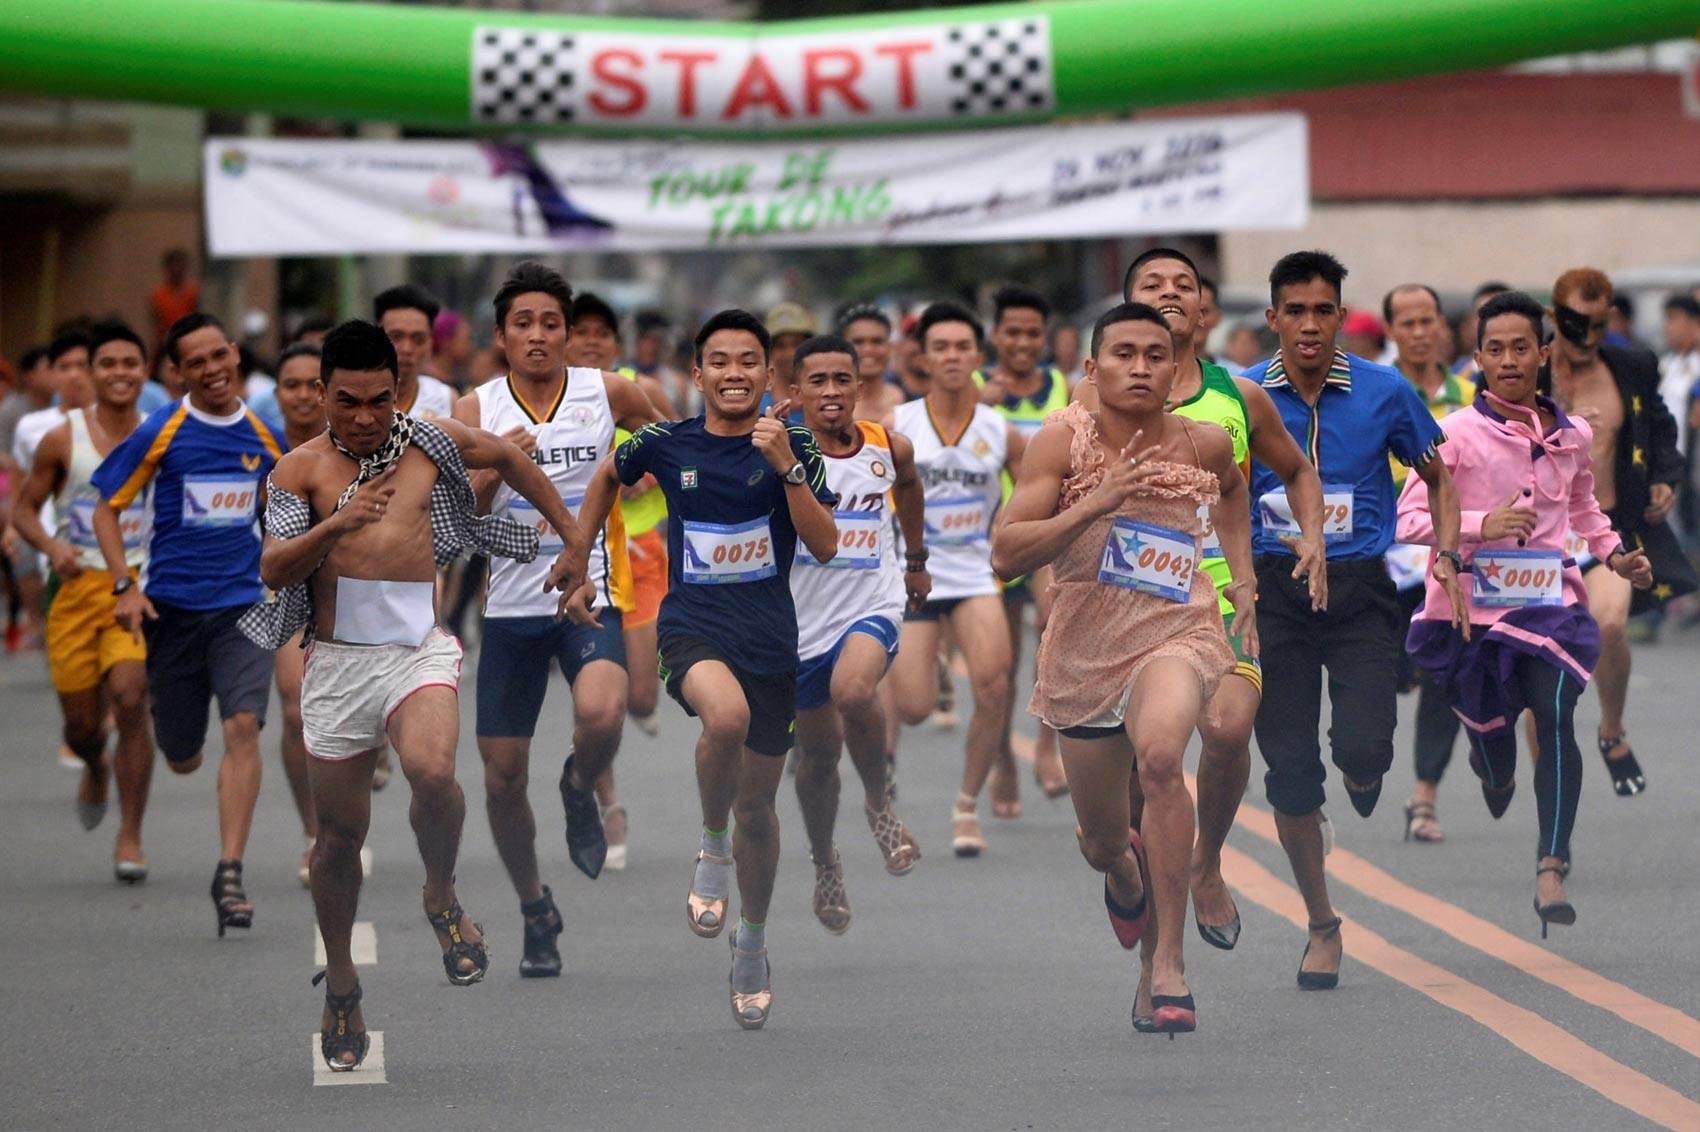 Dezenas disputam corrida com sapatos de salto alto nas Filipinas - Globo.com